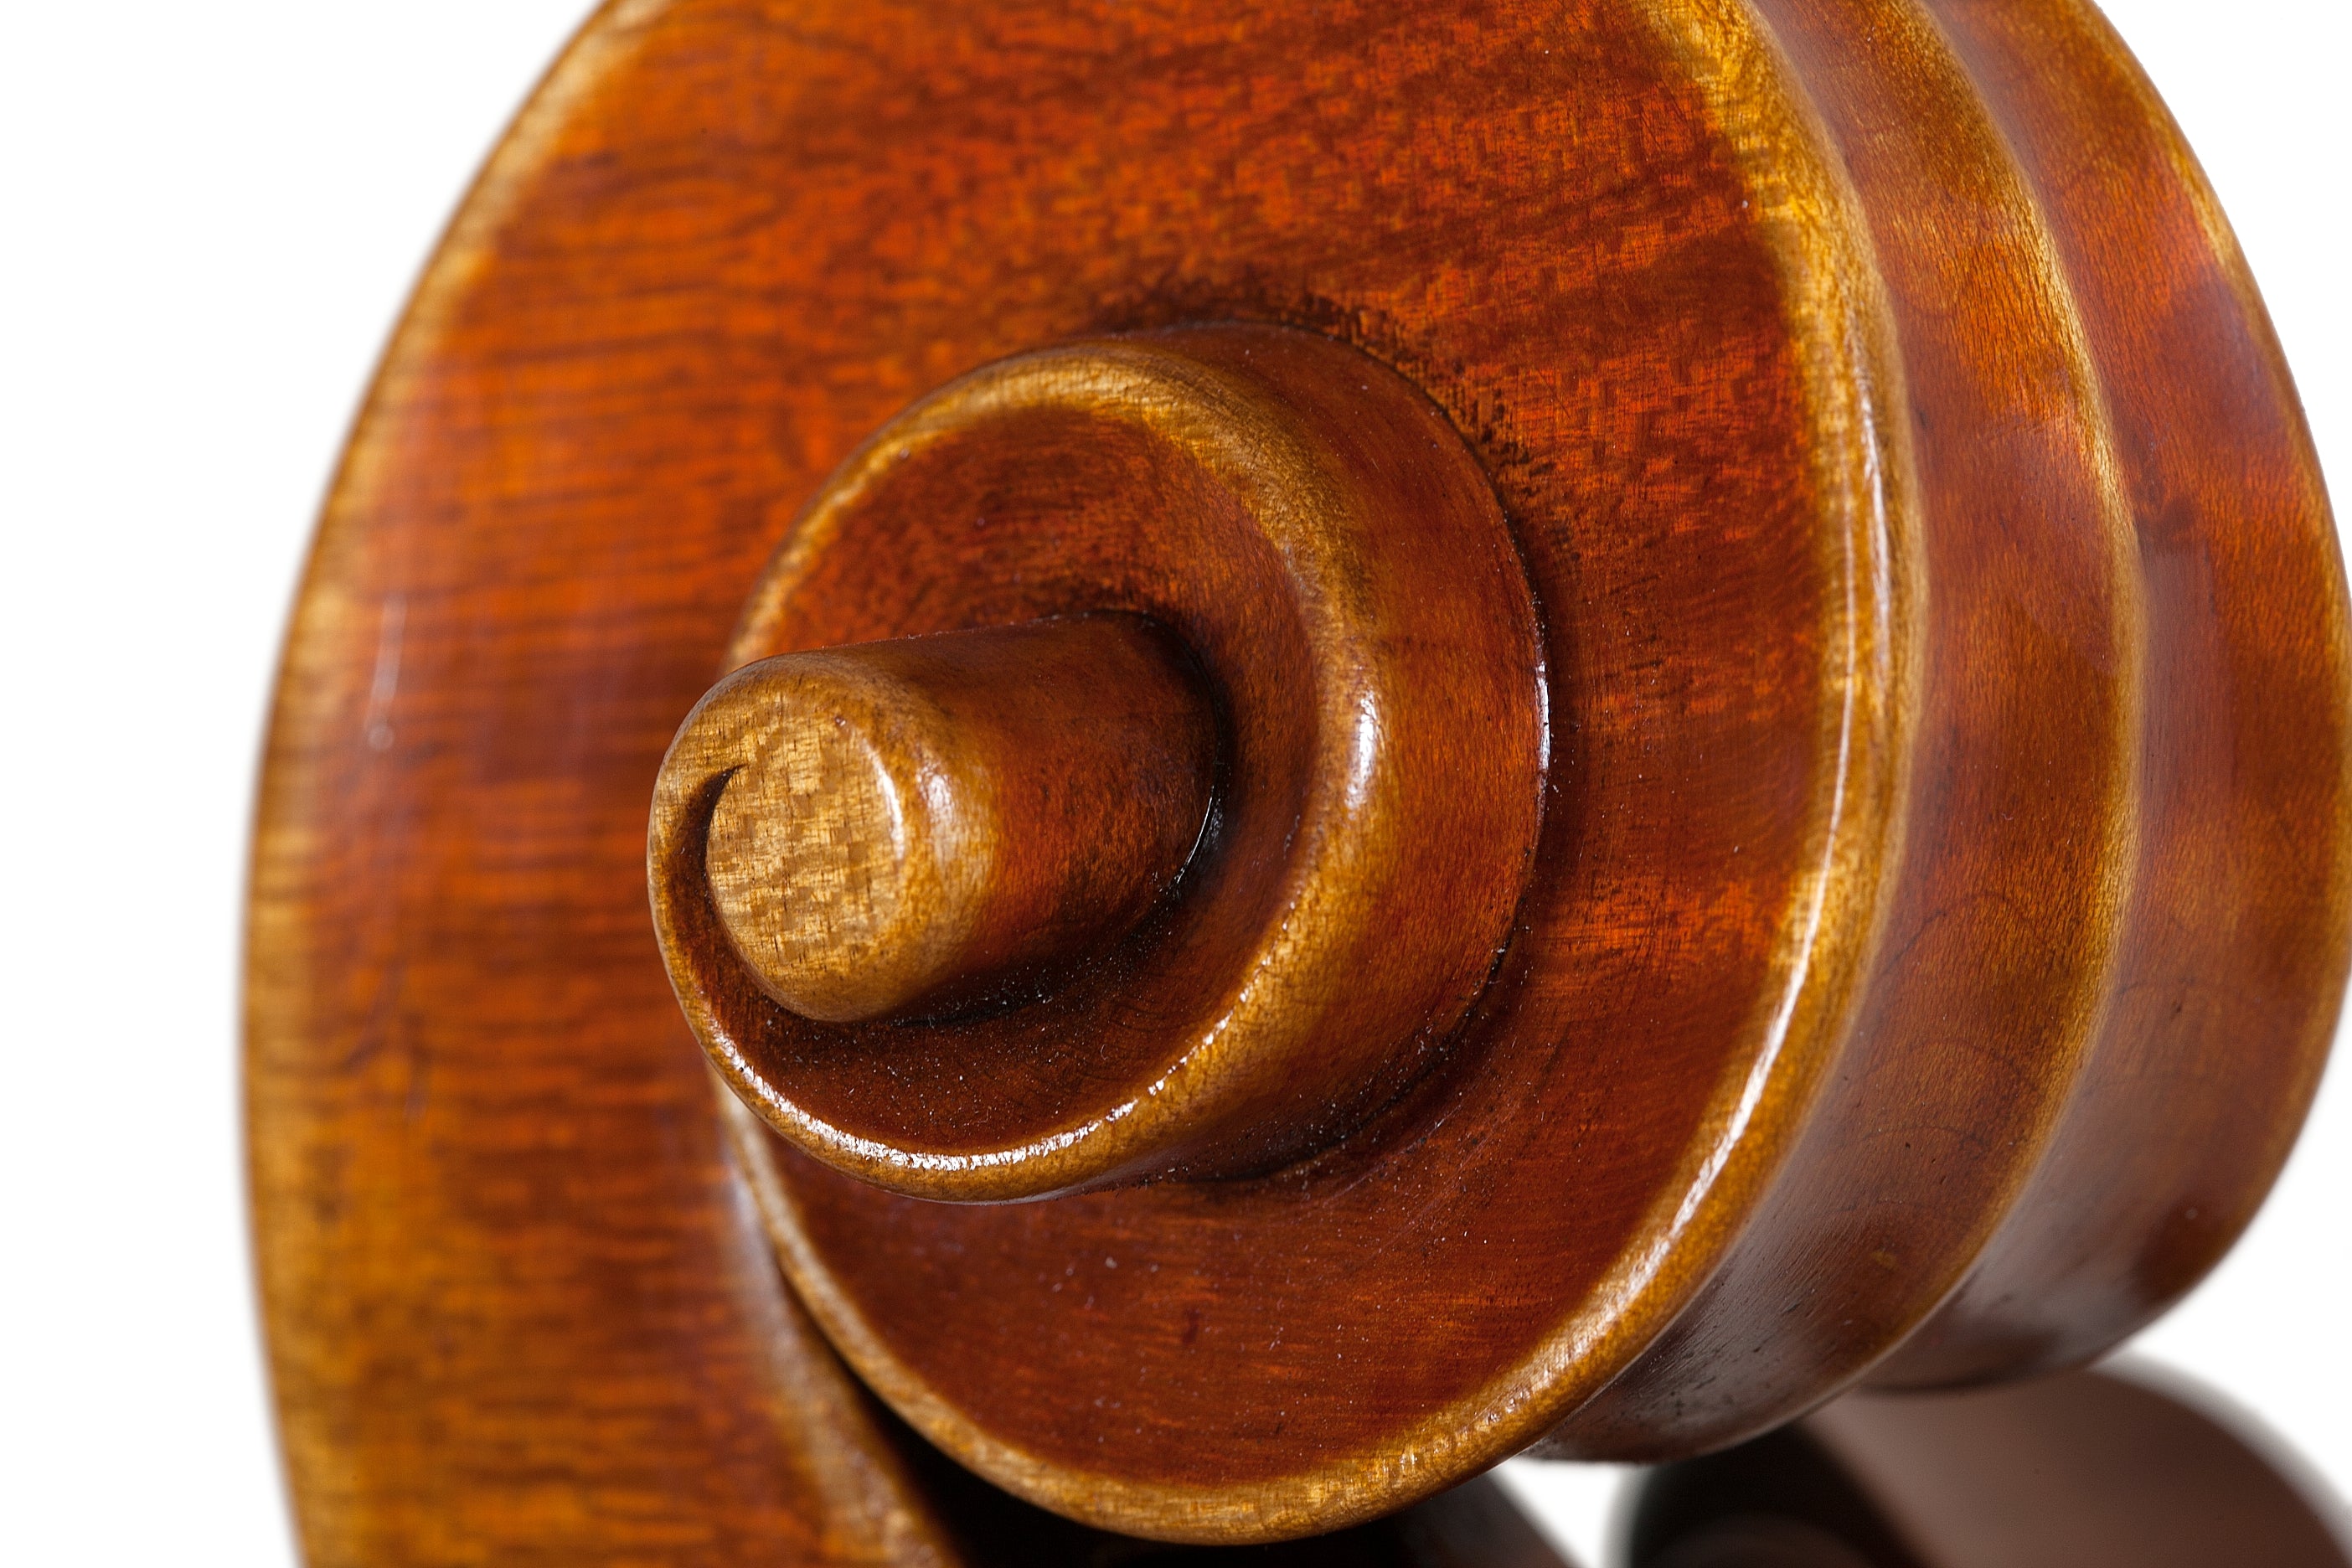 Cello - Linea Macchi, Stradivari